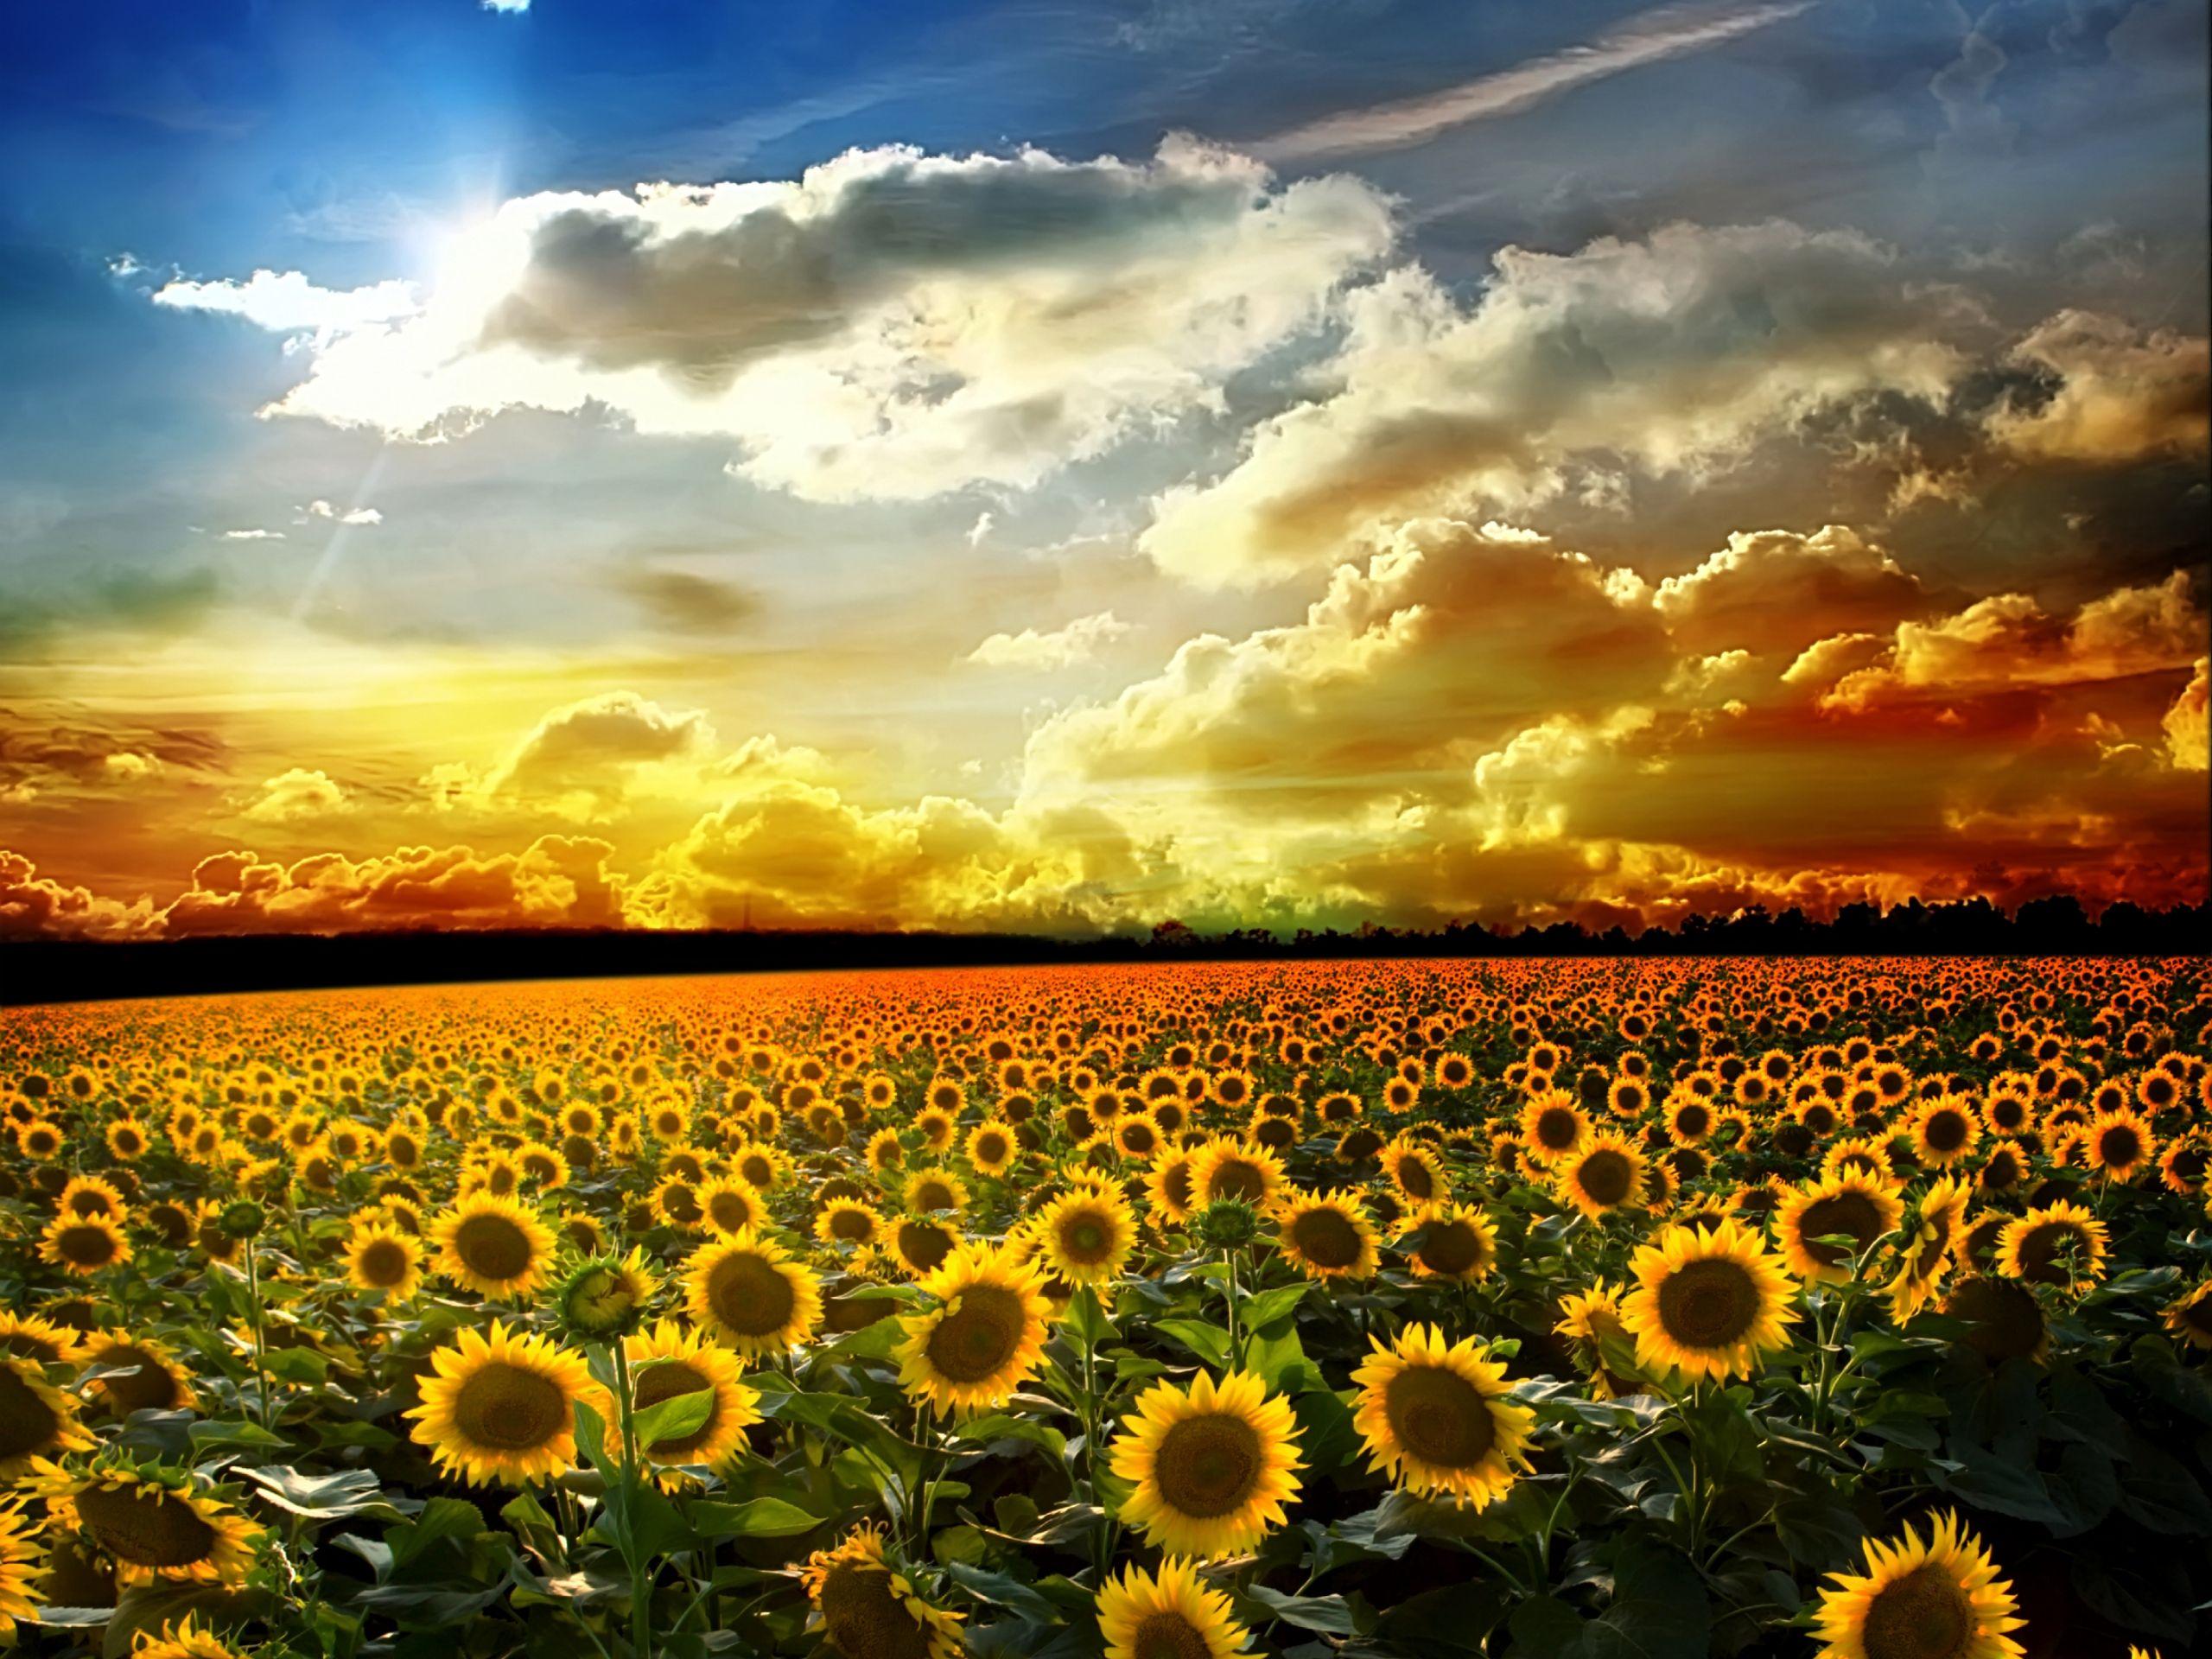 Sunflower Sunset Wallpaper Background For Desktop Wallpaper 2560